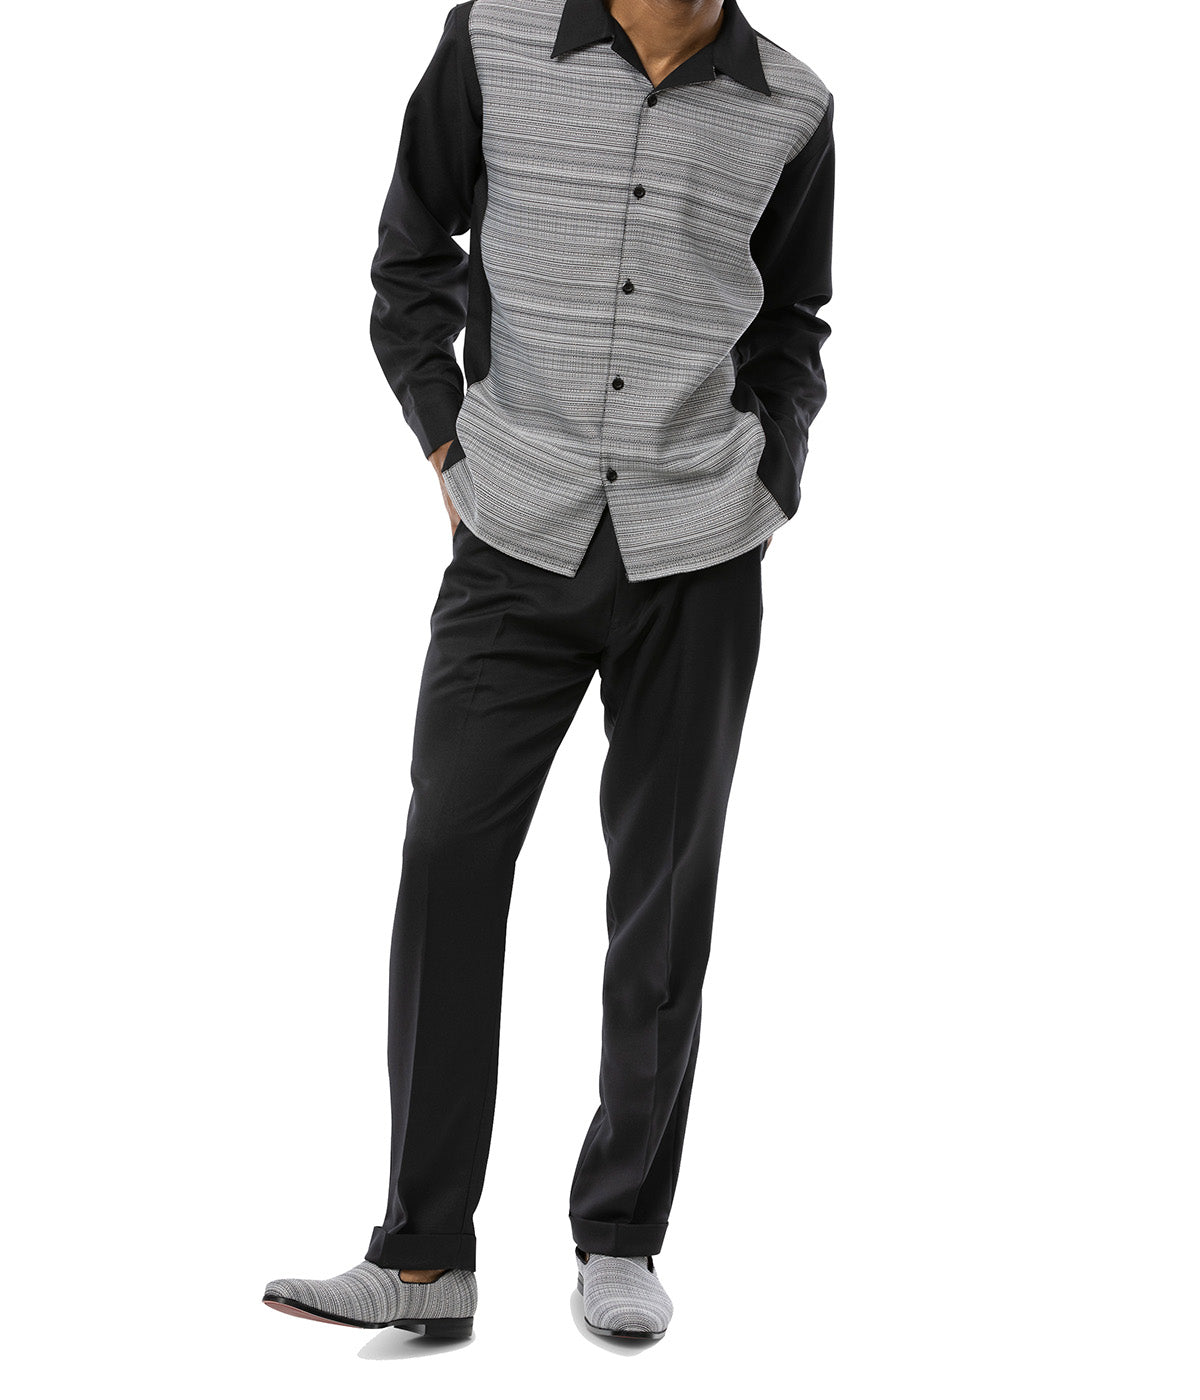 Black Weave Printed 2 Piece Long Sleeve Walking Suit Set